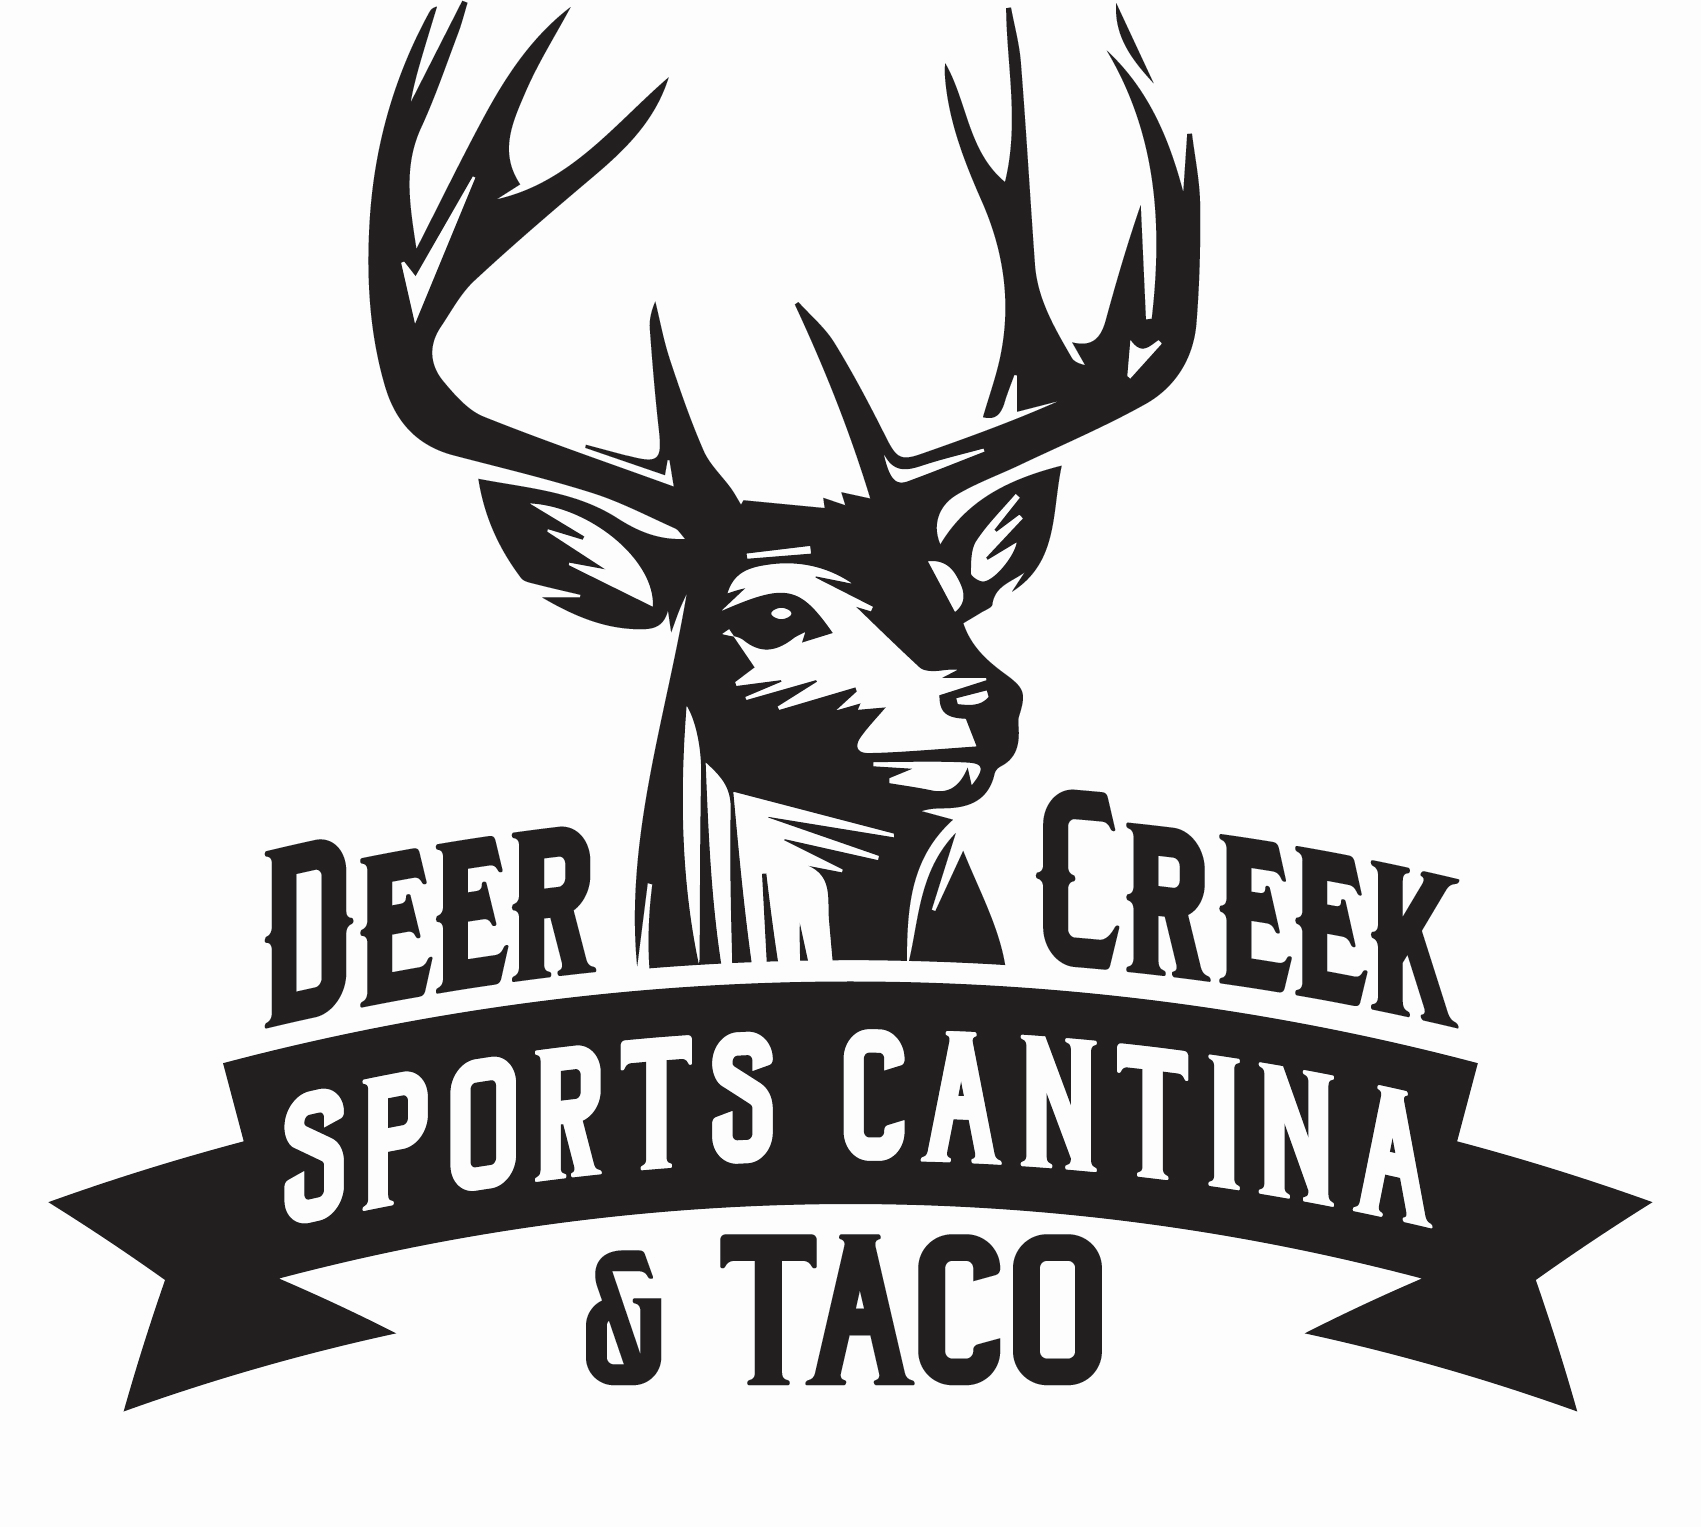 Deer Creek Sports Cantina & Tacos